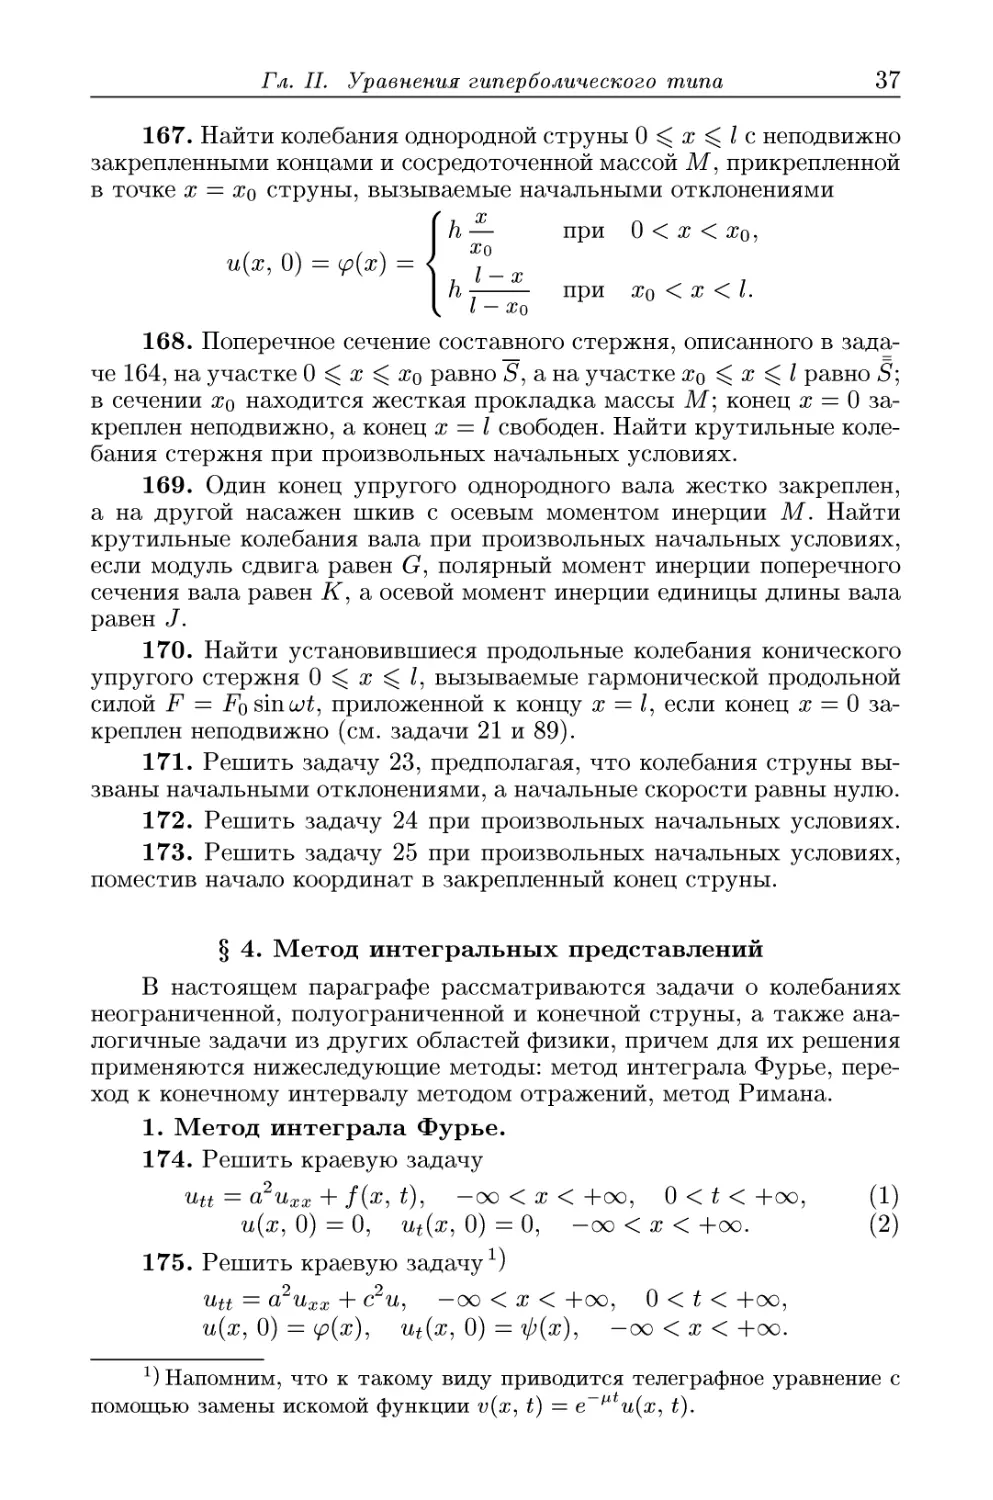 § 4. Метод интегральных представлений
1. Метод интеграла Фурье